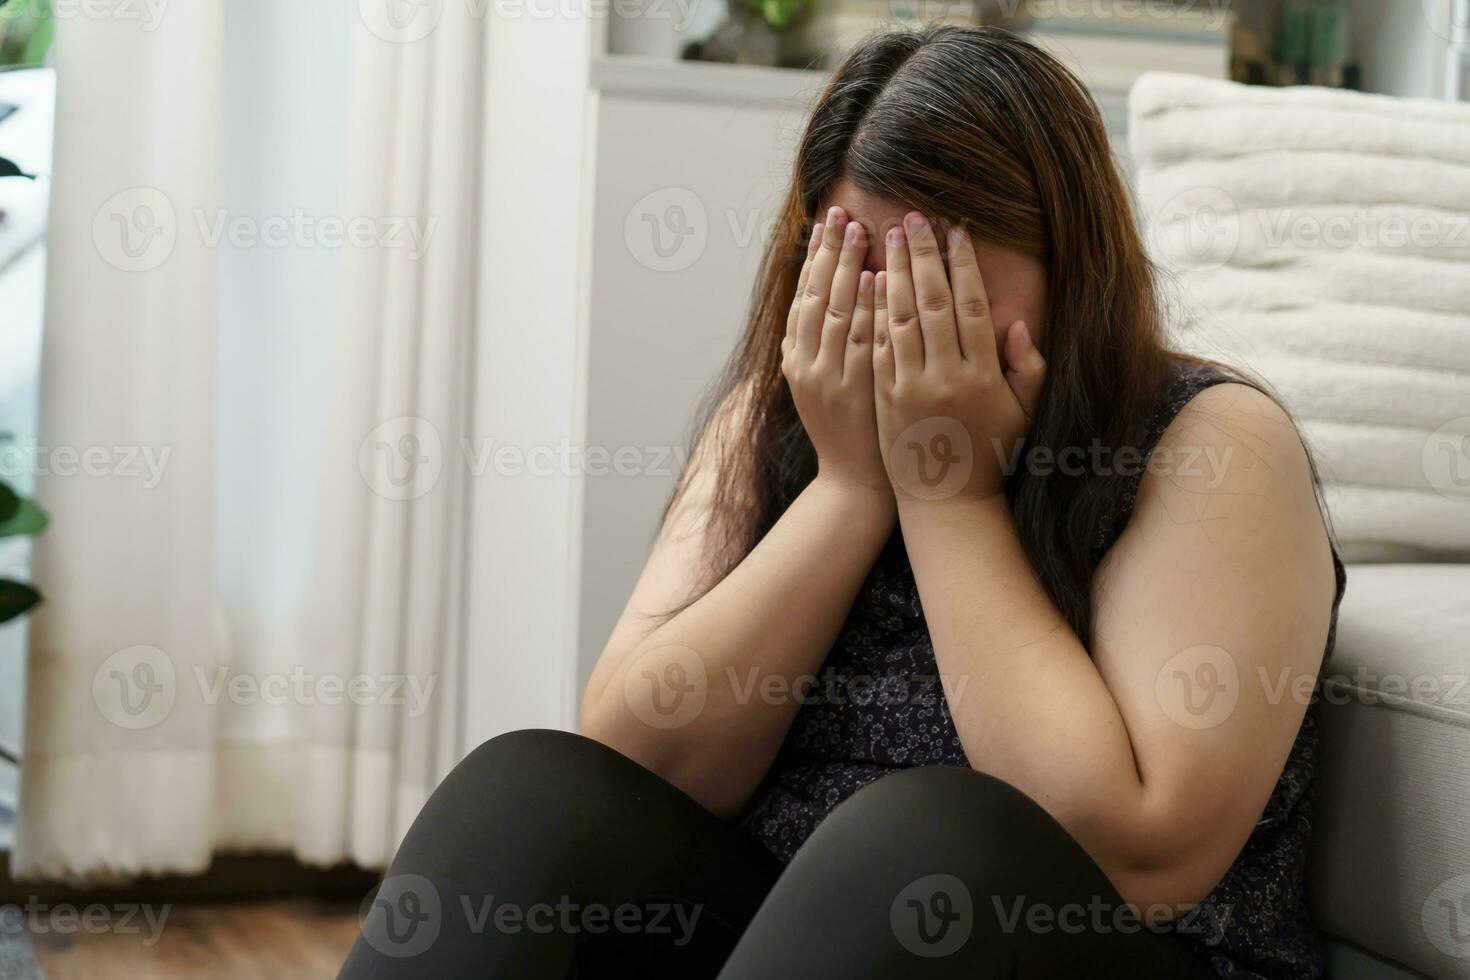 traurig Übergewicht Plus Größe Frau Denken Über Probleme auf Sofa verärgert Mädchen Gefühl einsam und traurig von Schlecht Beziehung oder deprimiert Frau Störung mental Gesundheit foto